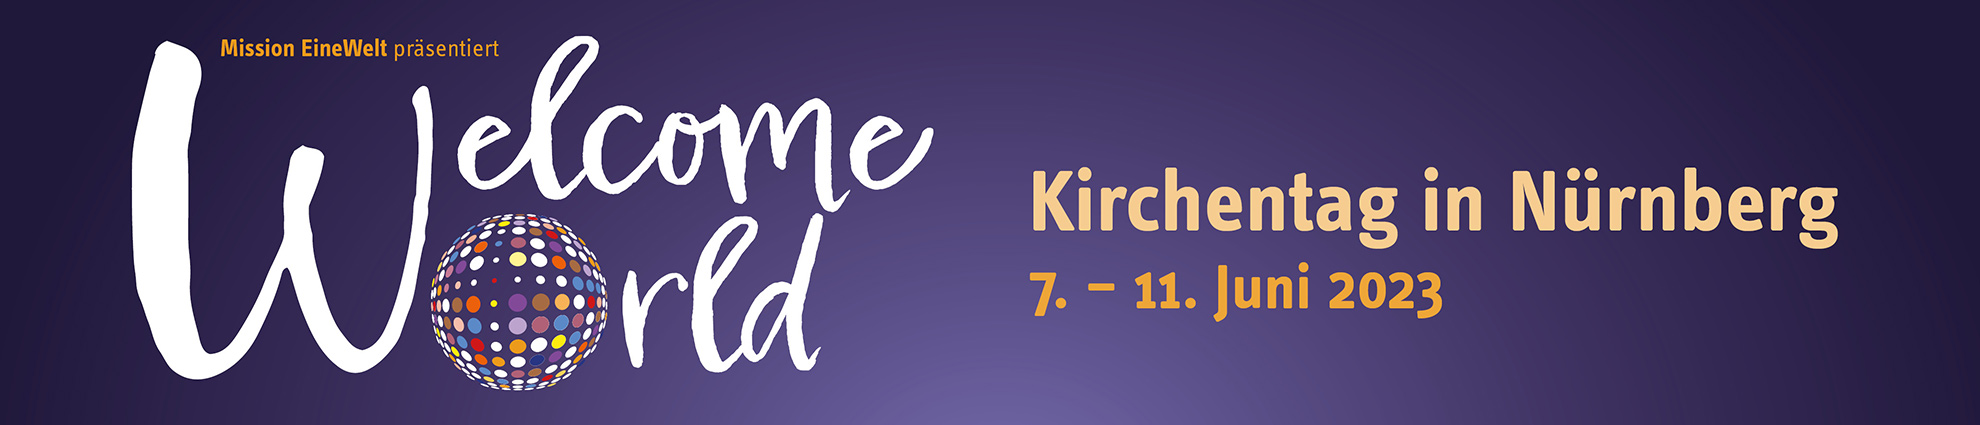 Kirchentag 2023 in Nürnberg - Welcome World